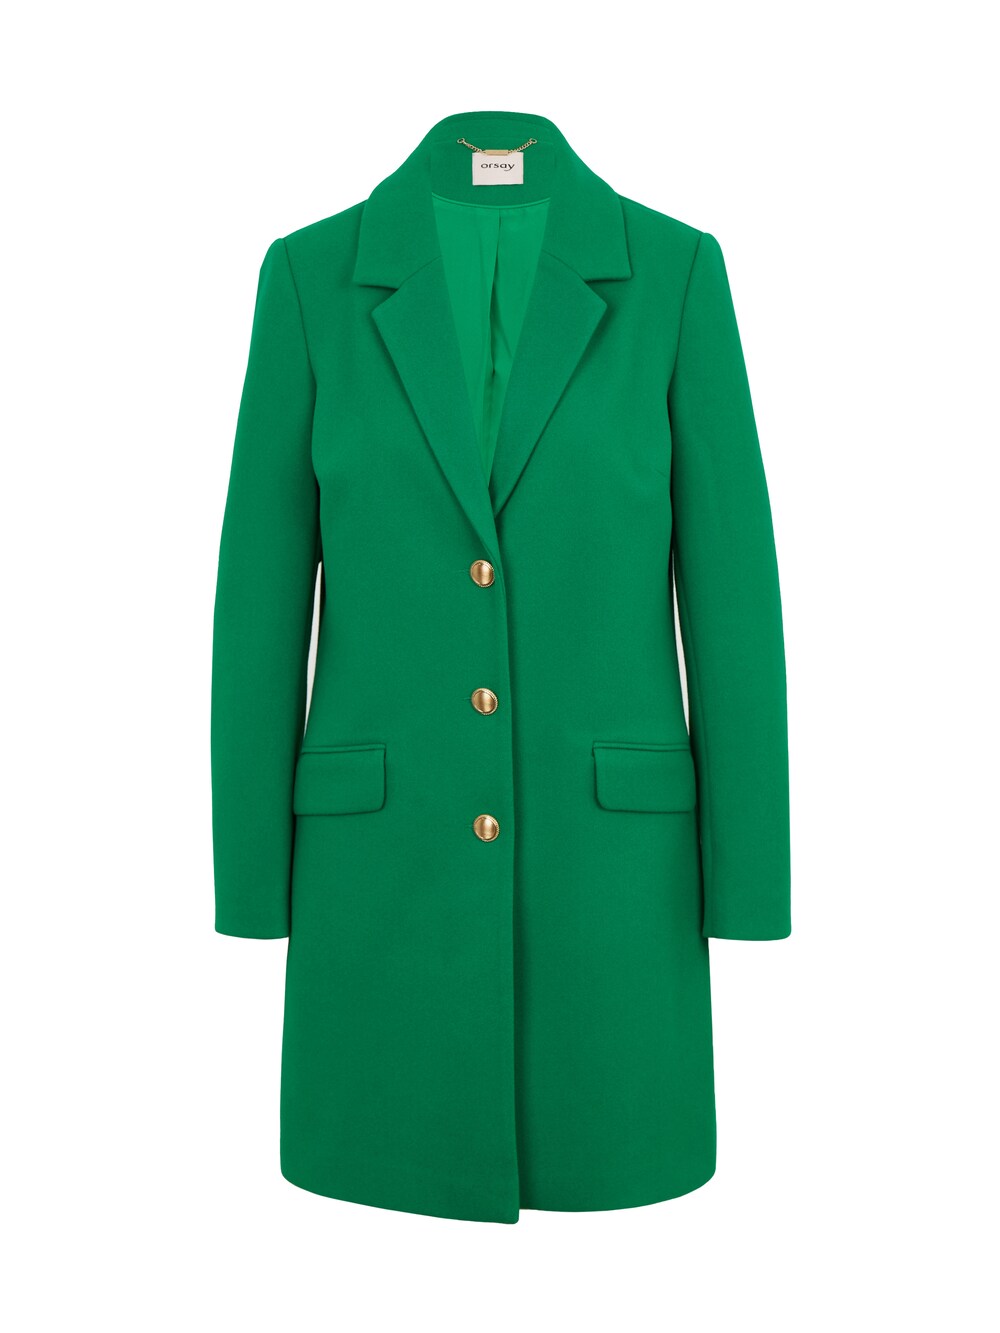 Межсезонное пальто Orsay, зеленый межсезонное пальто orsay светло серый